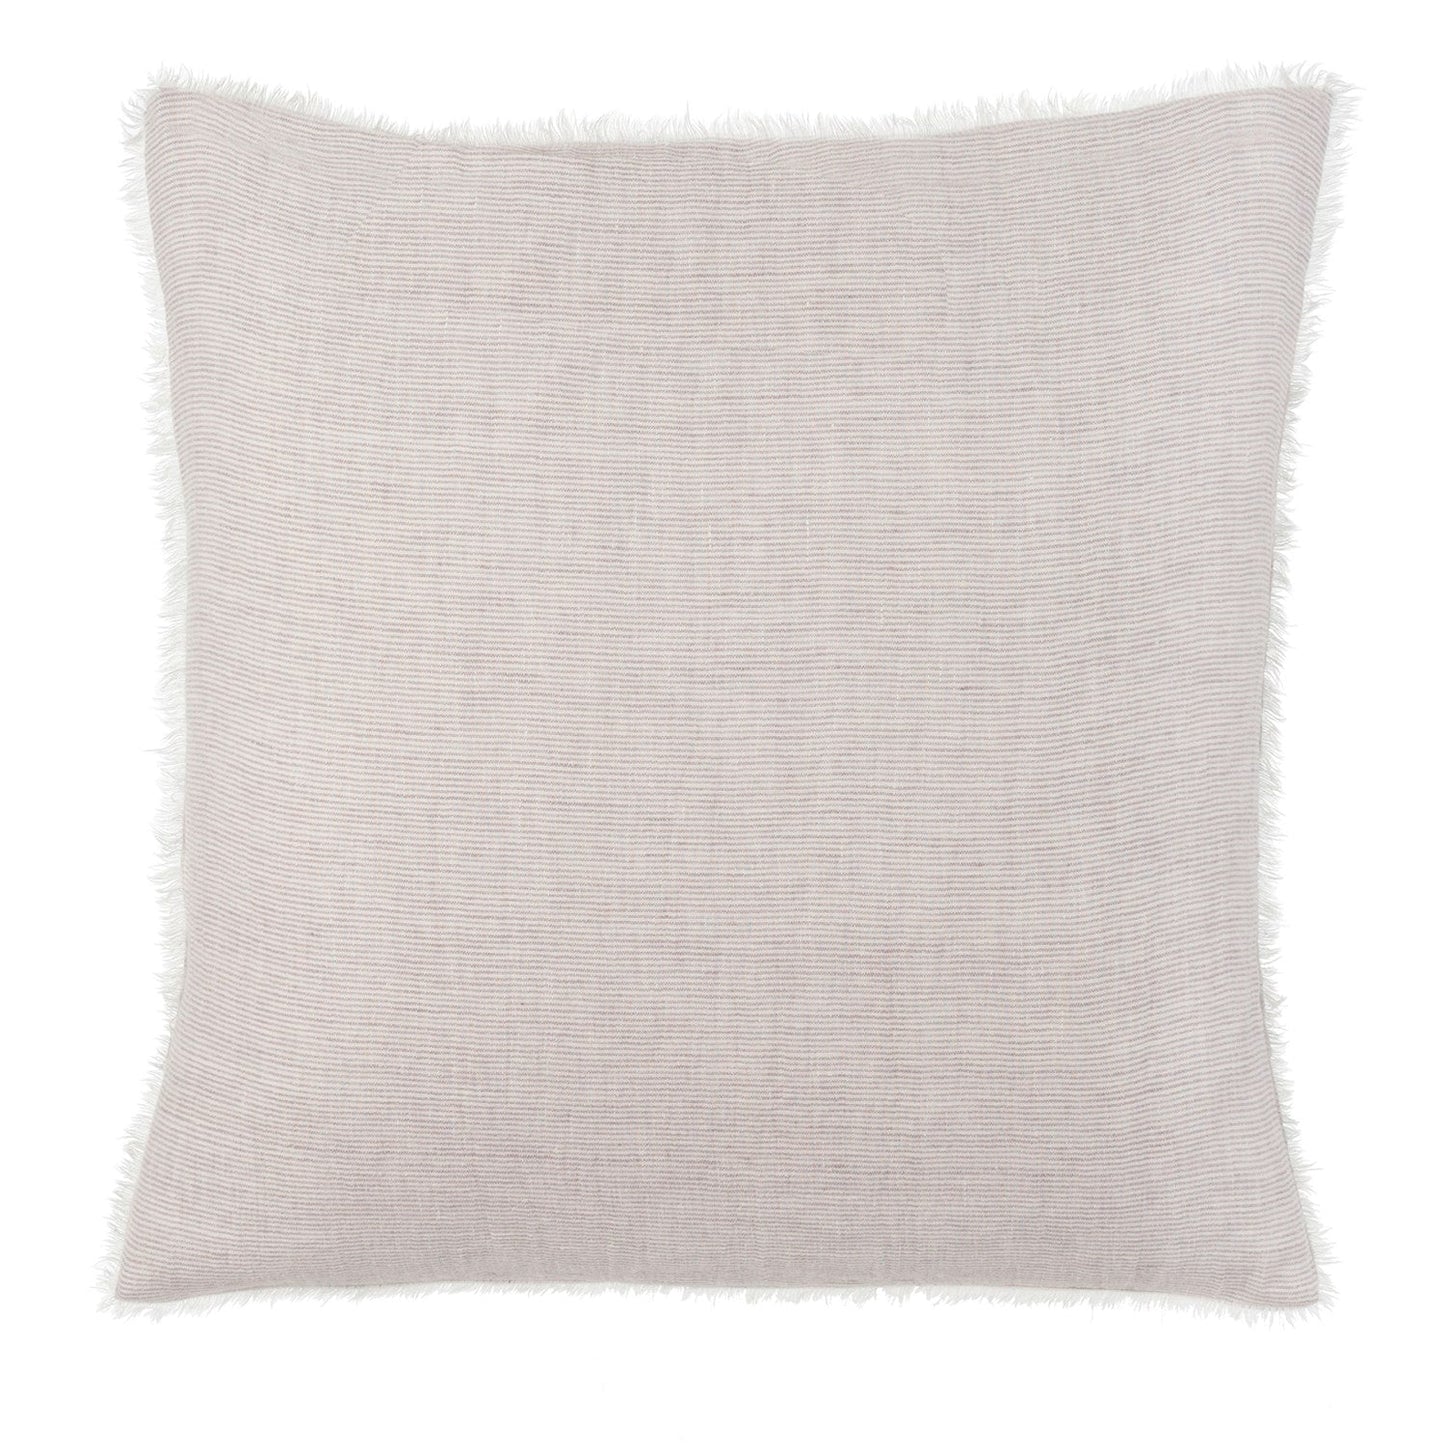 20x20 Linen Pillow